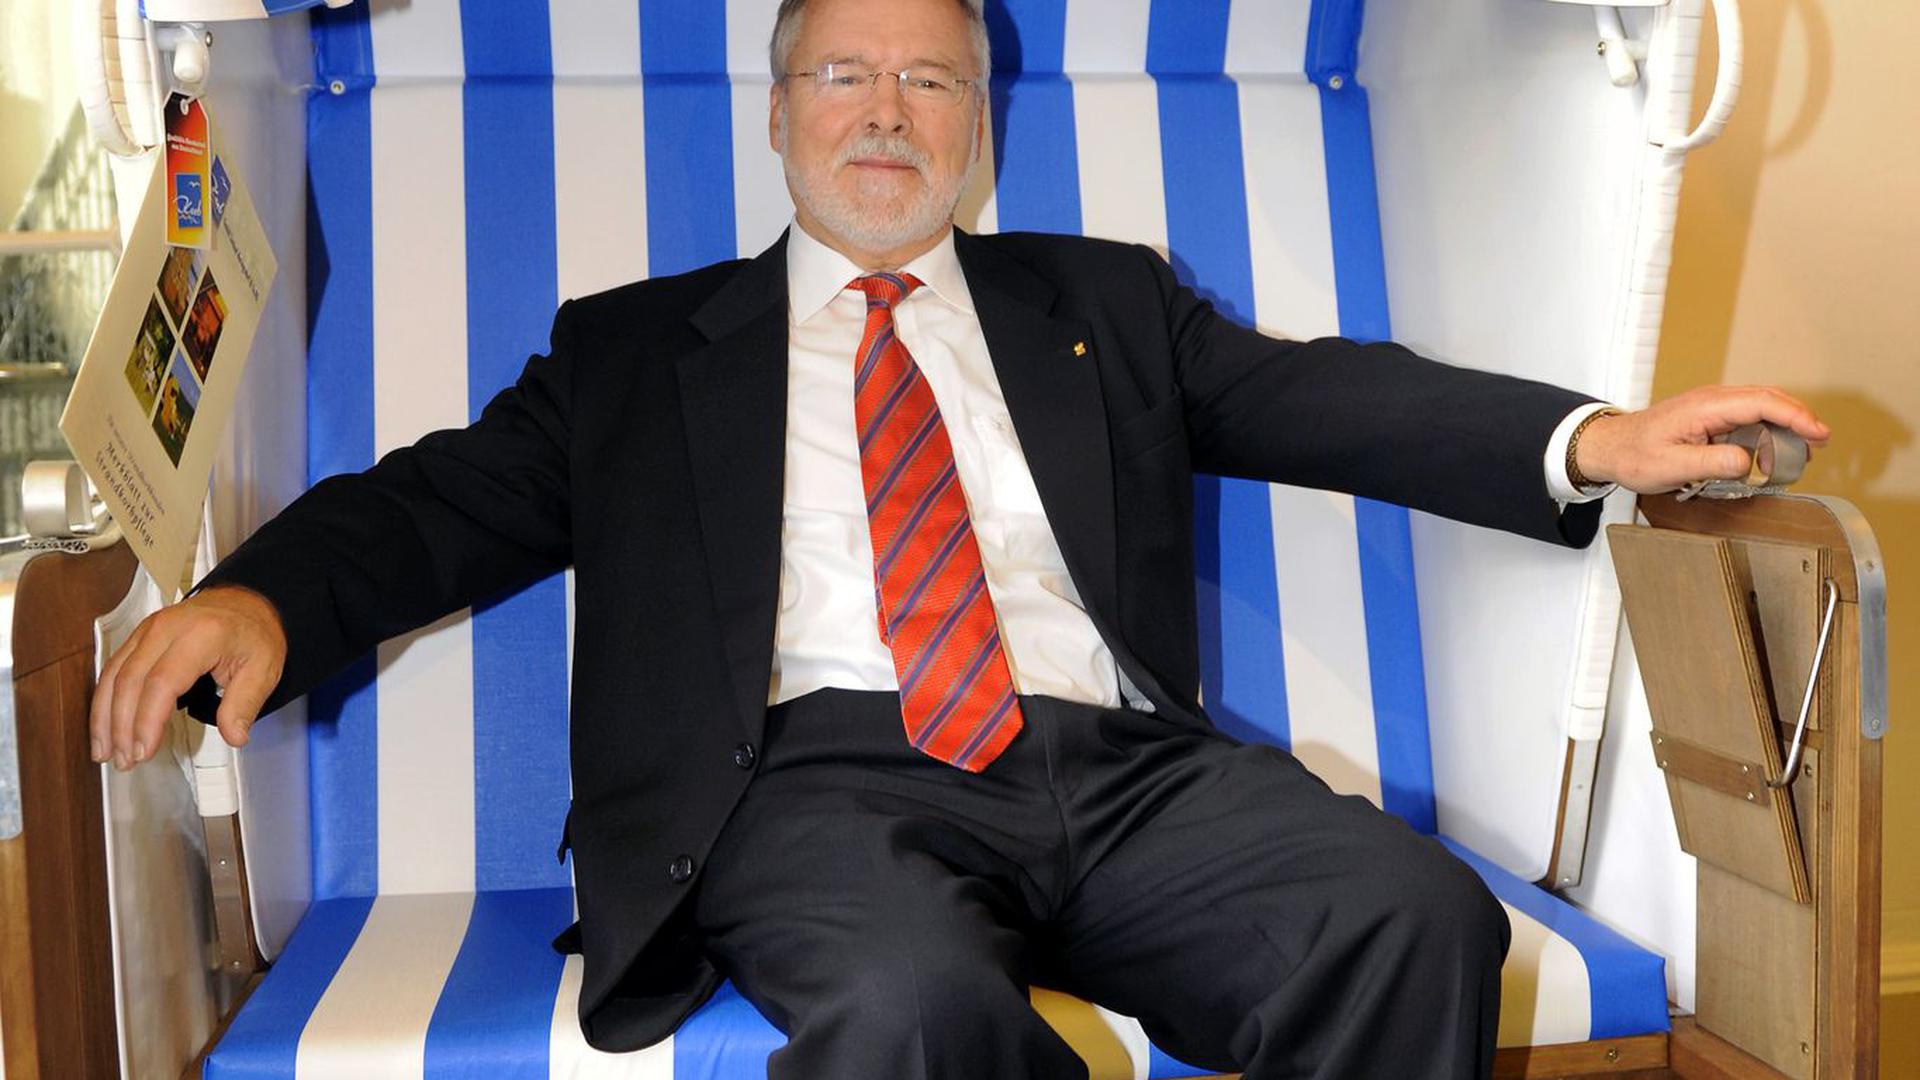 Der Ministerpräsident von Mecklenburg-Vorpommern, Harald Ringstorff, sitzt während seines Abschiedsempfangs im Jahr 2008 in Schwerin in einem Strandkorb, den er zuvor als Geschenk erhalten hatte.